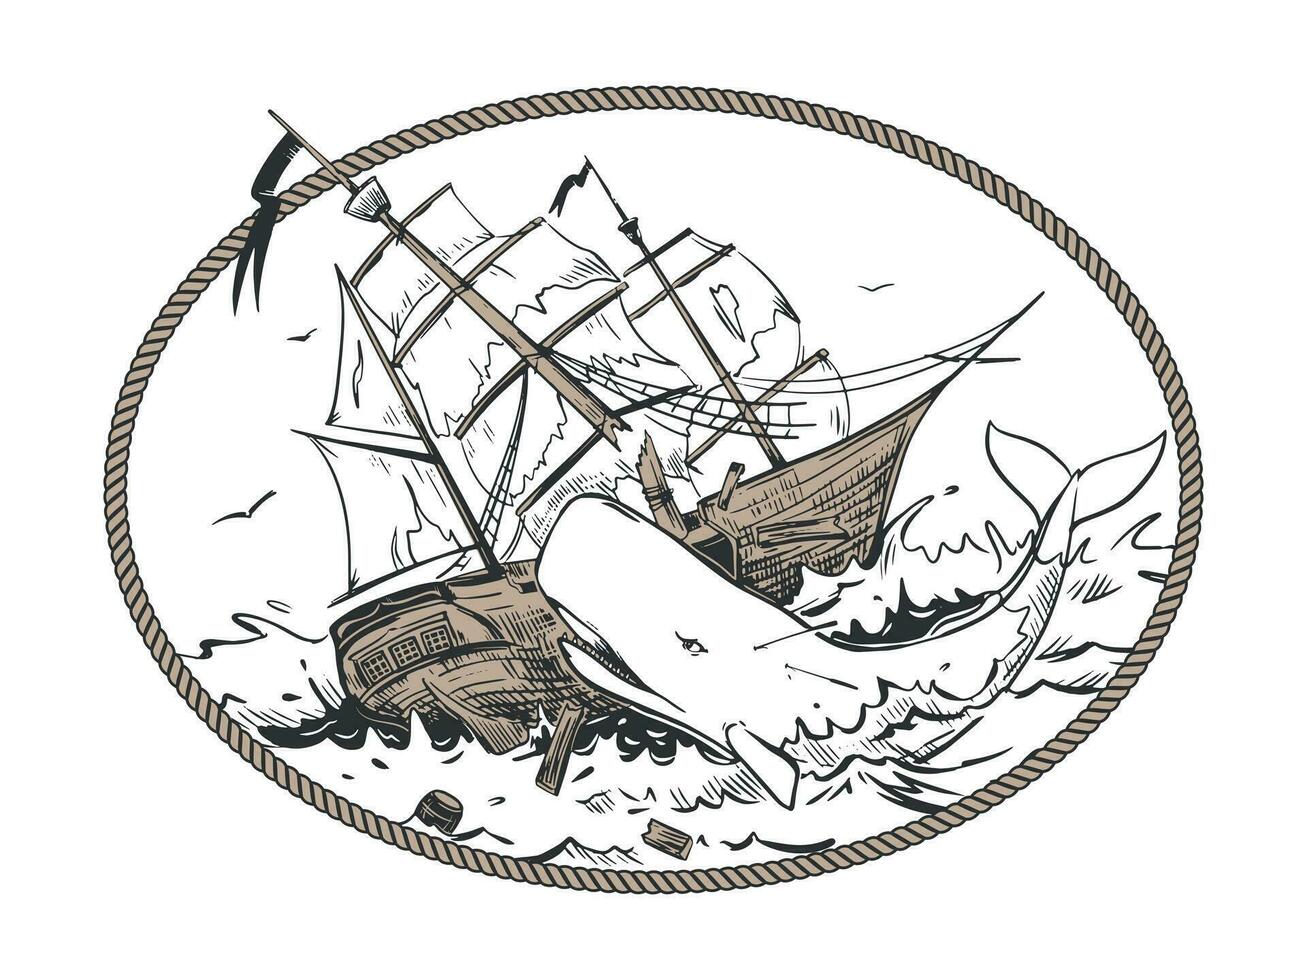 el blanco esperma ballena ataques el barco. el mítico monstruo responsable para el naufragio. vector ilustración en grabado estilo. composición establecido en el leyendas de marineros en un oval cuerda marco.